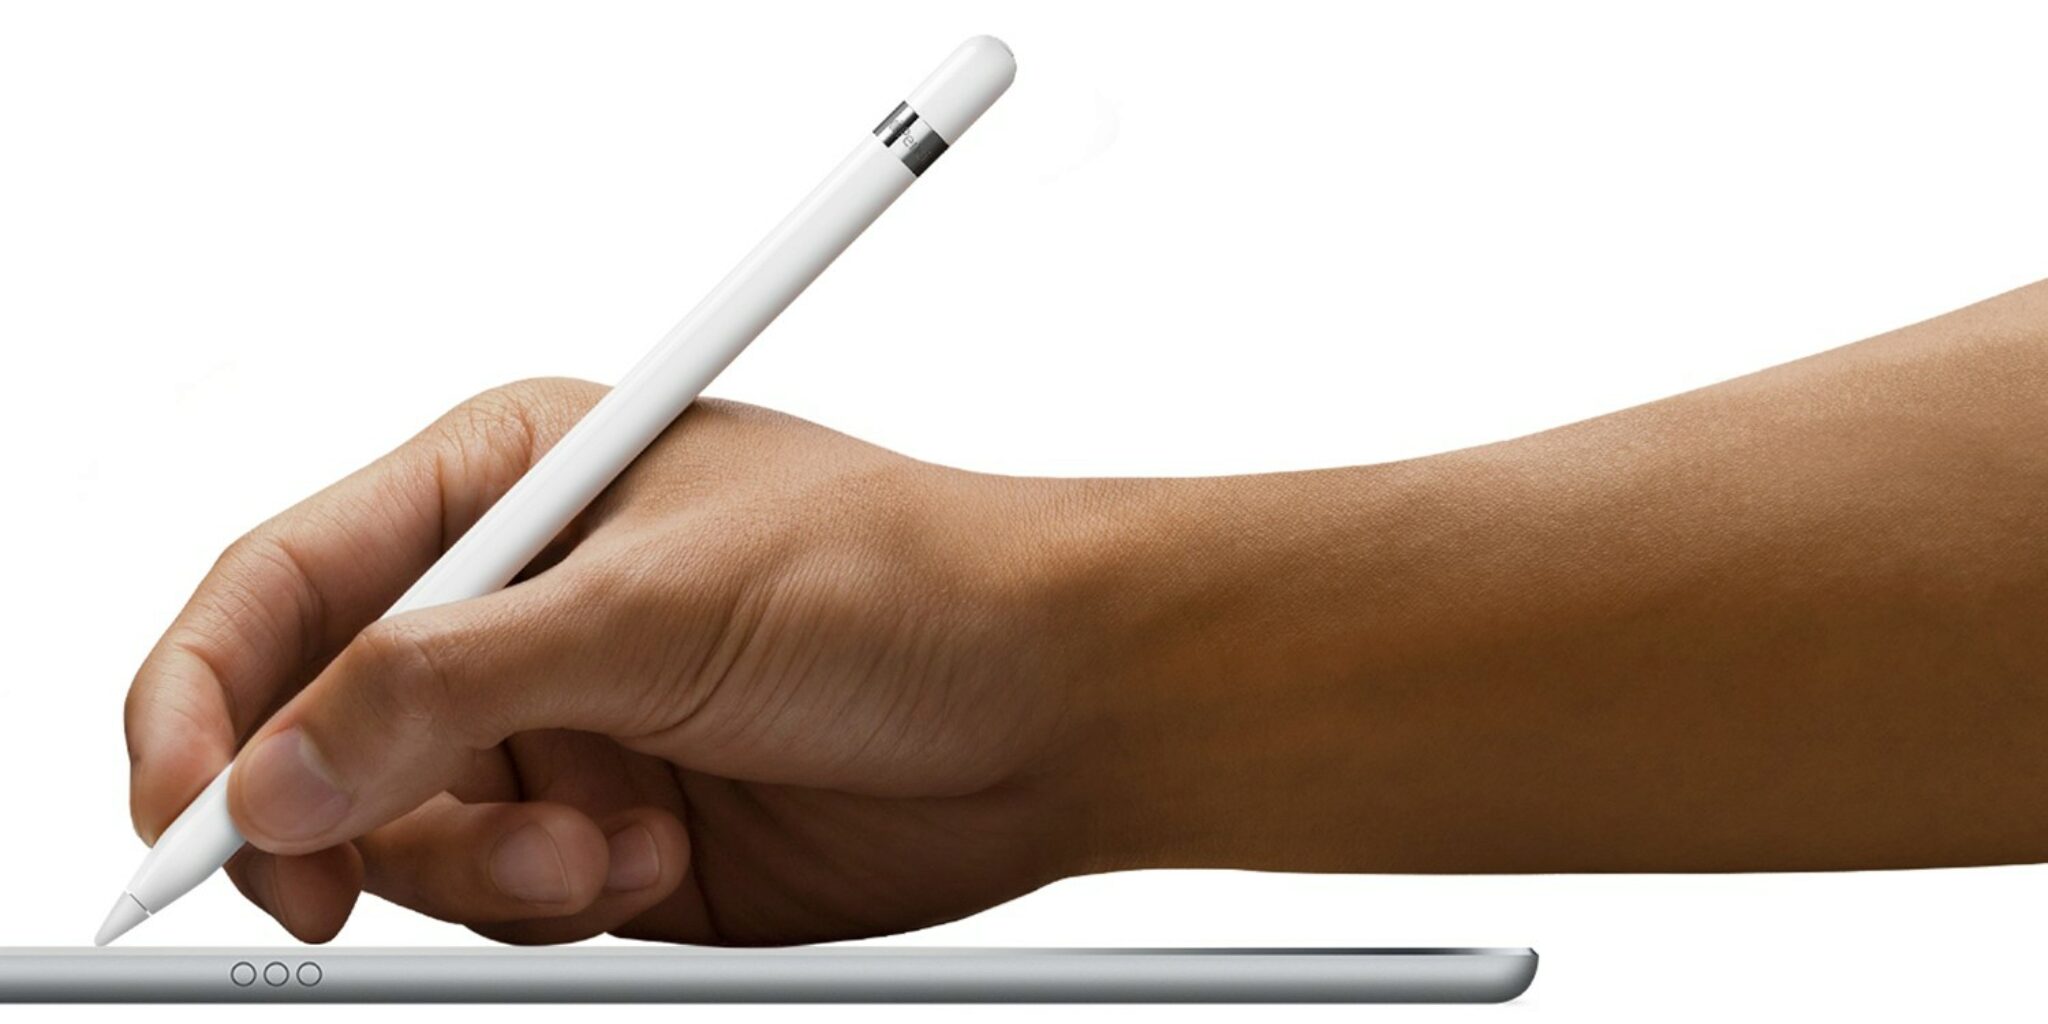 Confronto Tra Apple Pencil E Samsung S Pen. Per Disegnare E Prendere Appunti